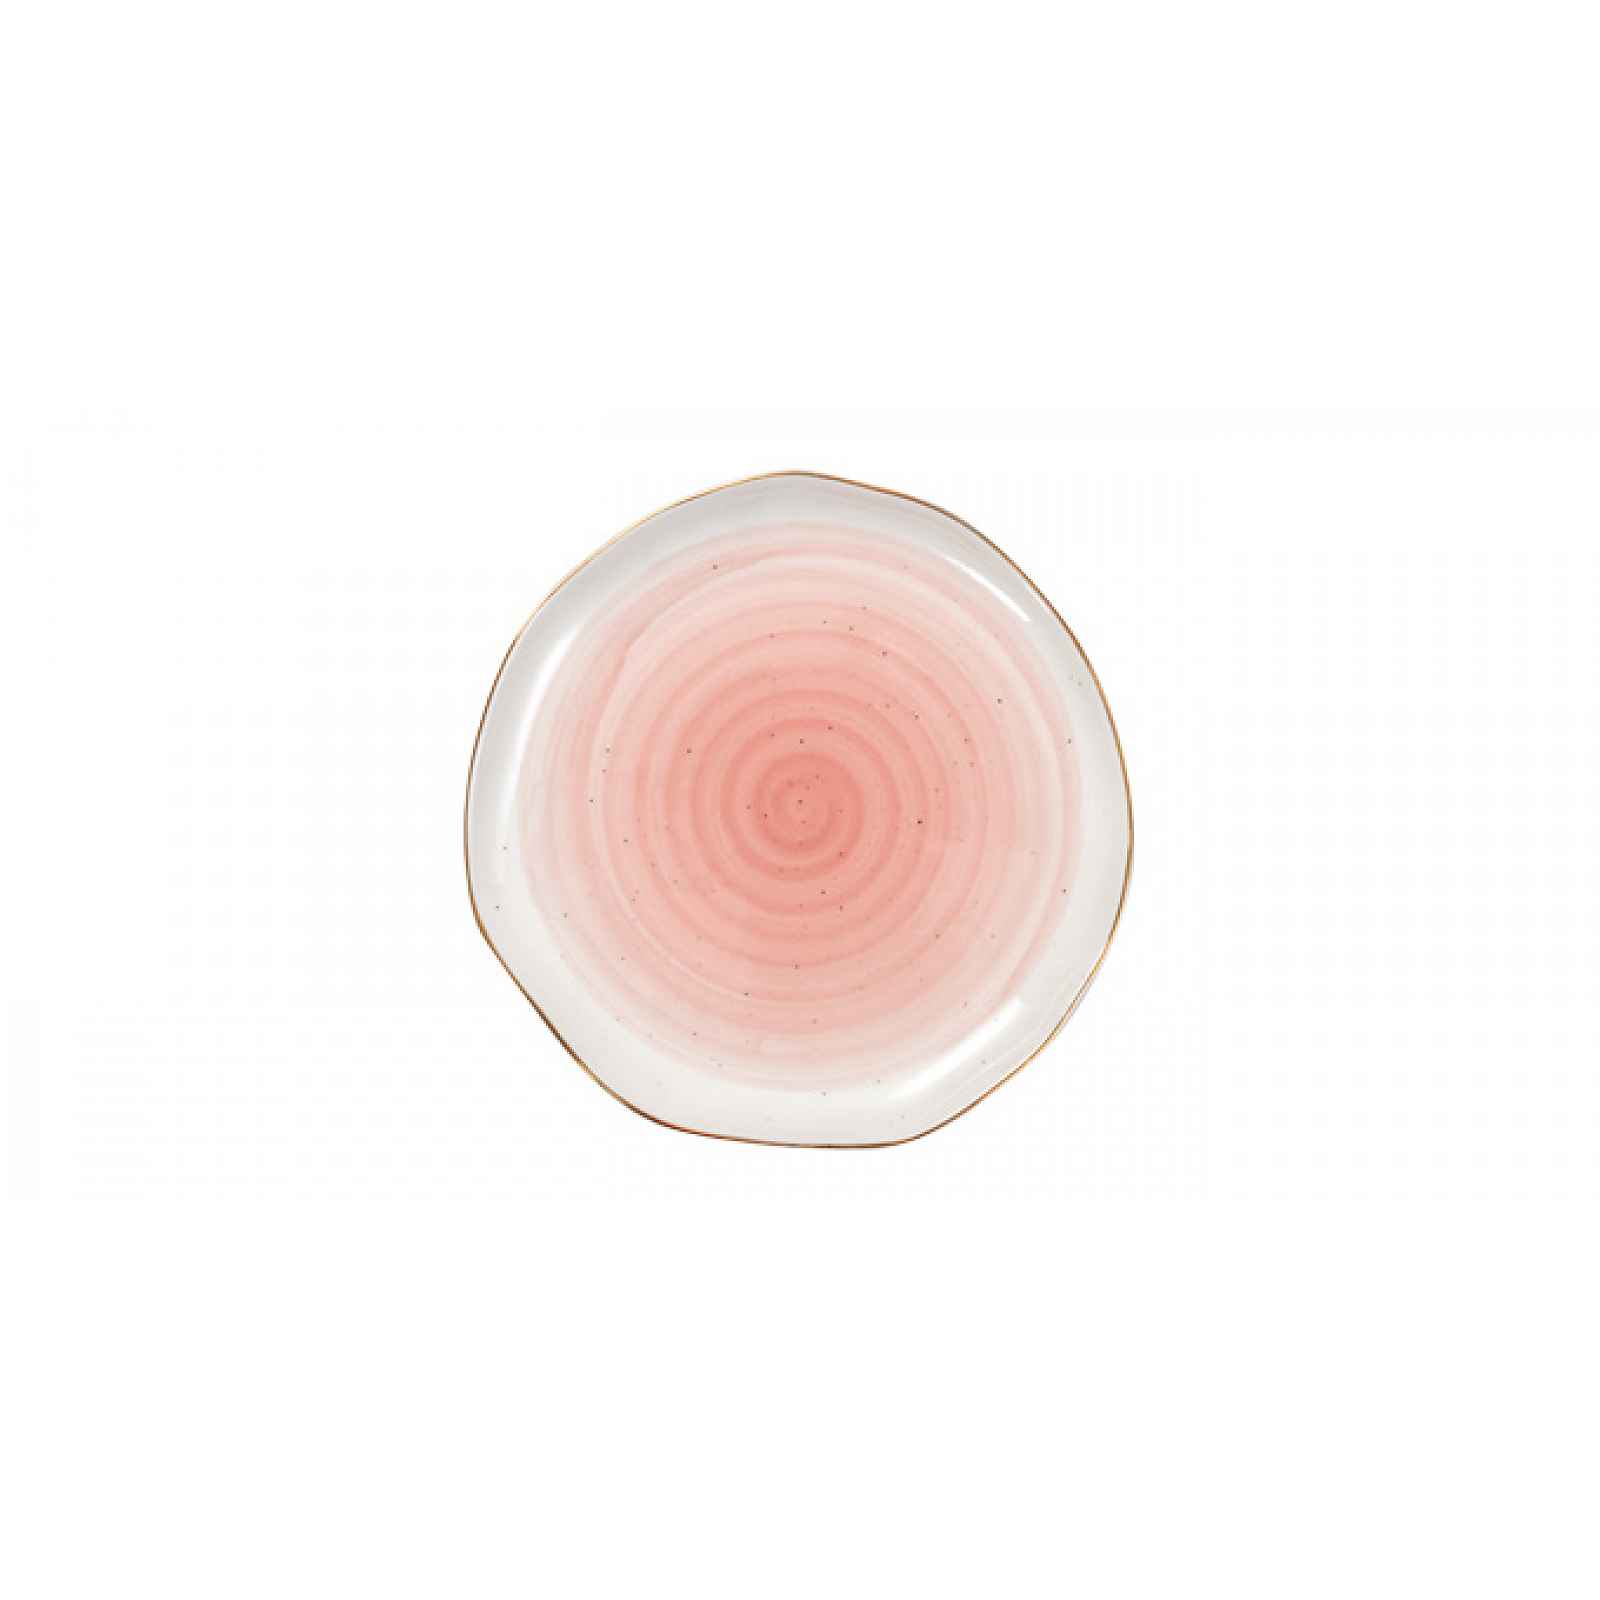 TESCOMA dezertní talíř CHARMANT ø 19 cm, růžová